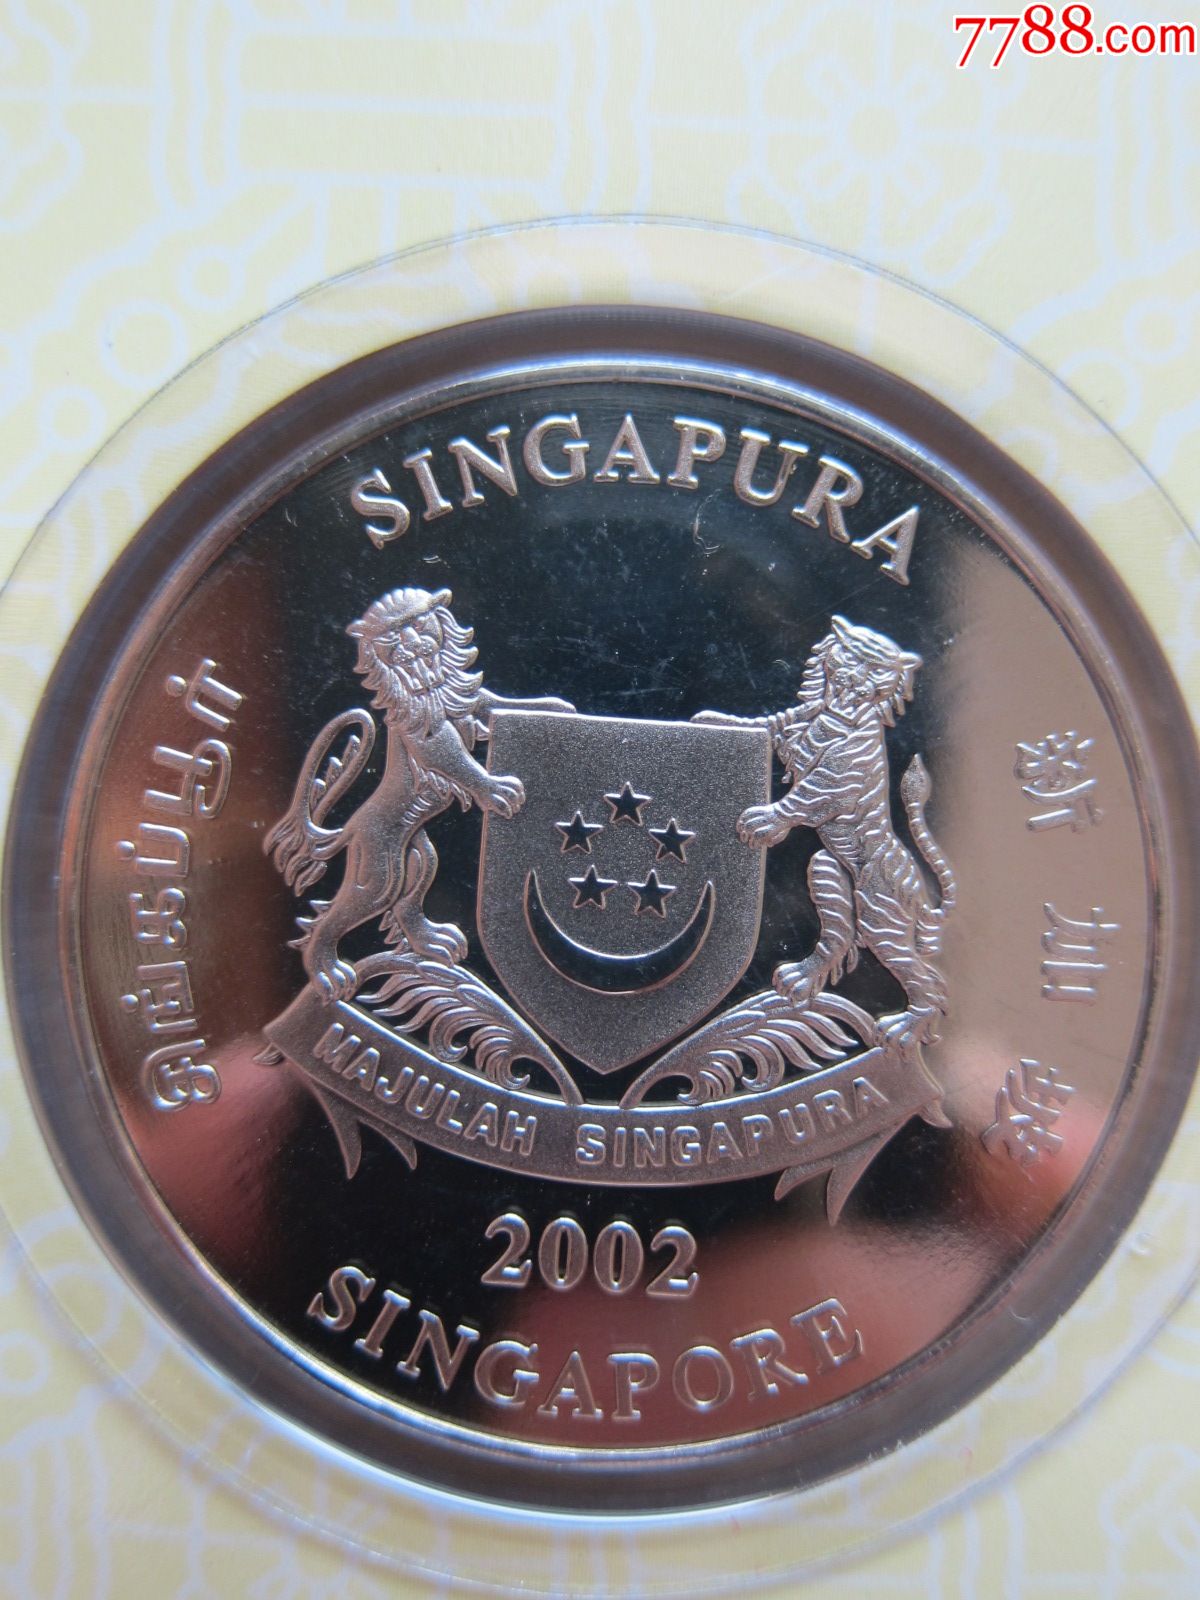 新加坡2002马年生肖币10新元面值新加坡铸币局发行封装极轻微氧化变色